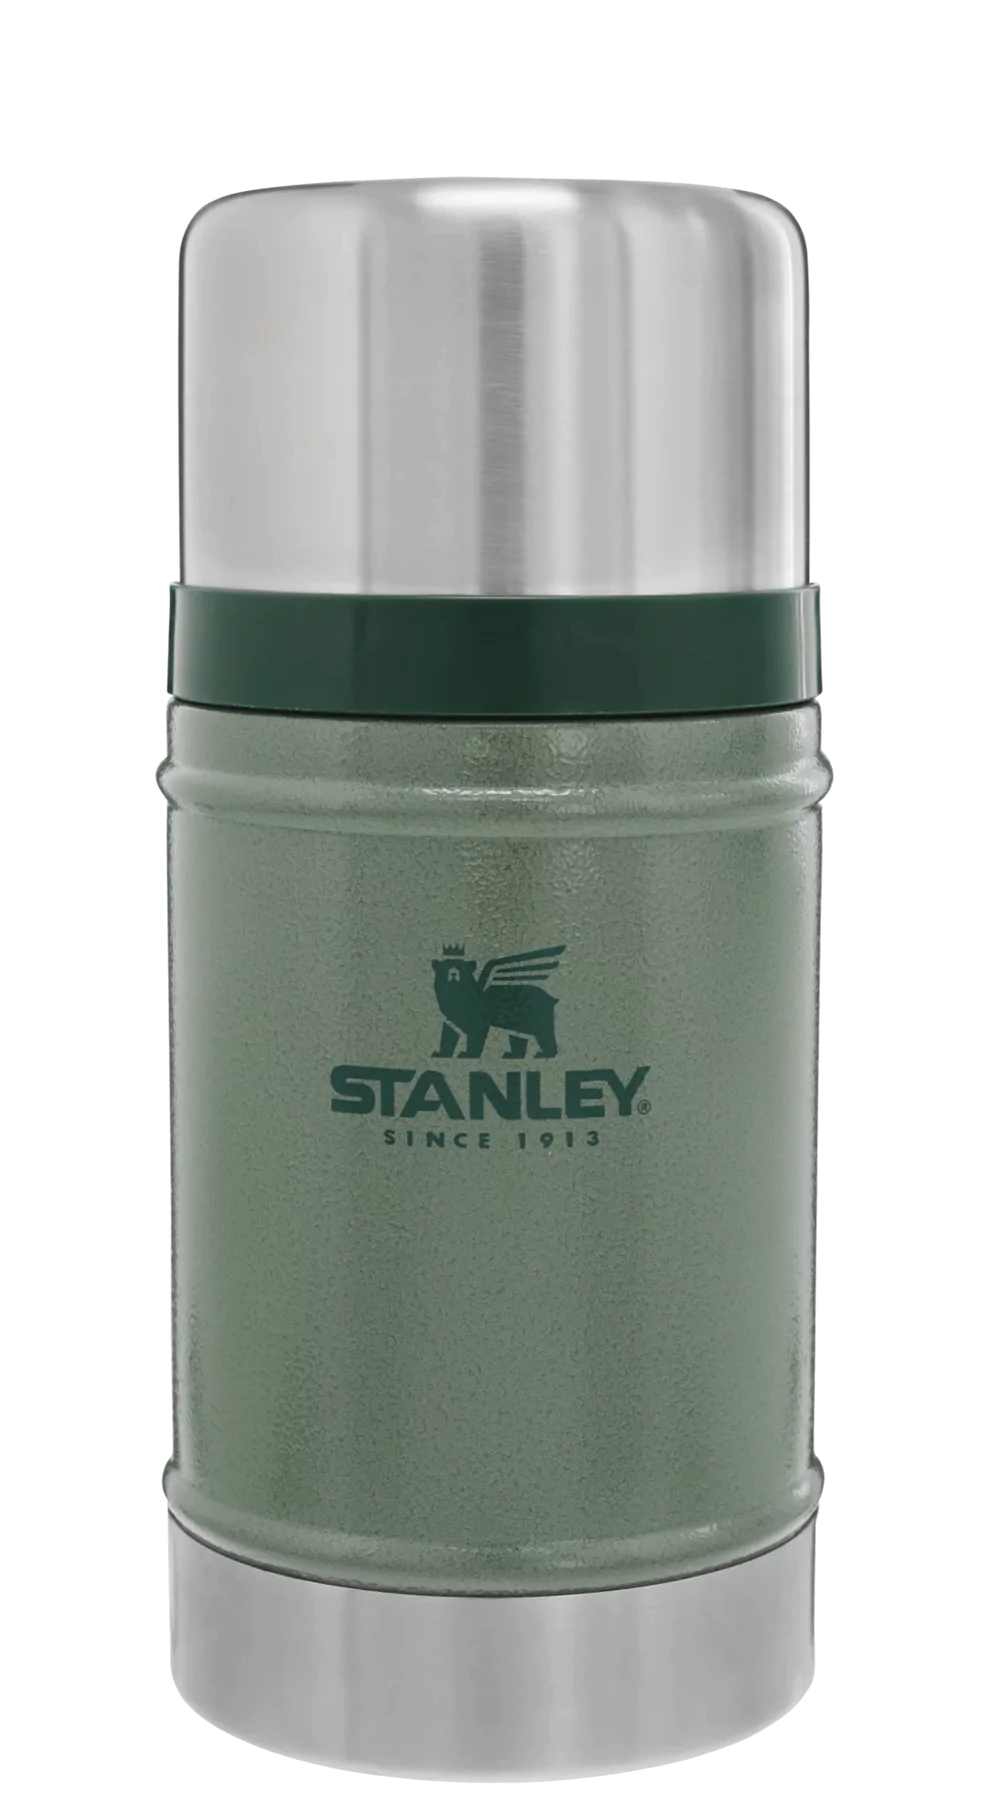 Billede af Stanley Legendary Classic Food Jar 0,7L, grøn